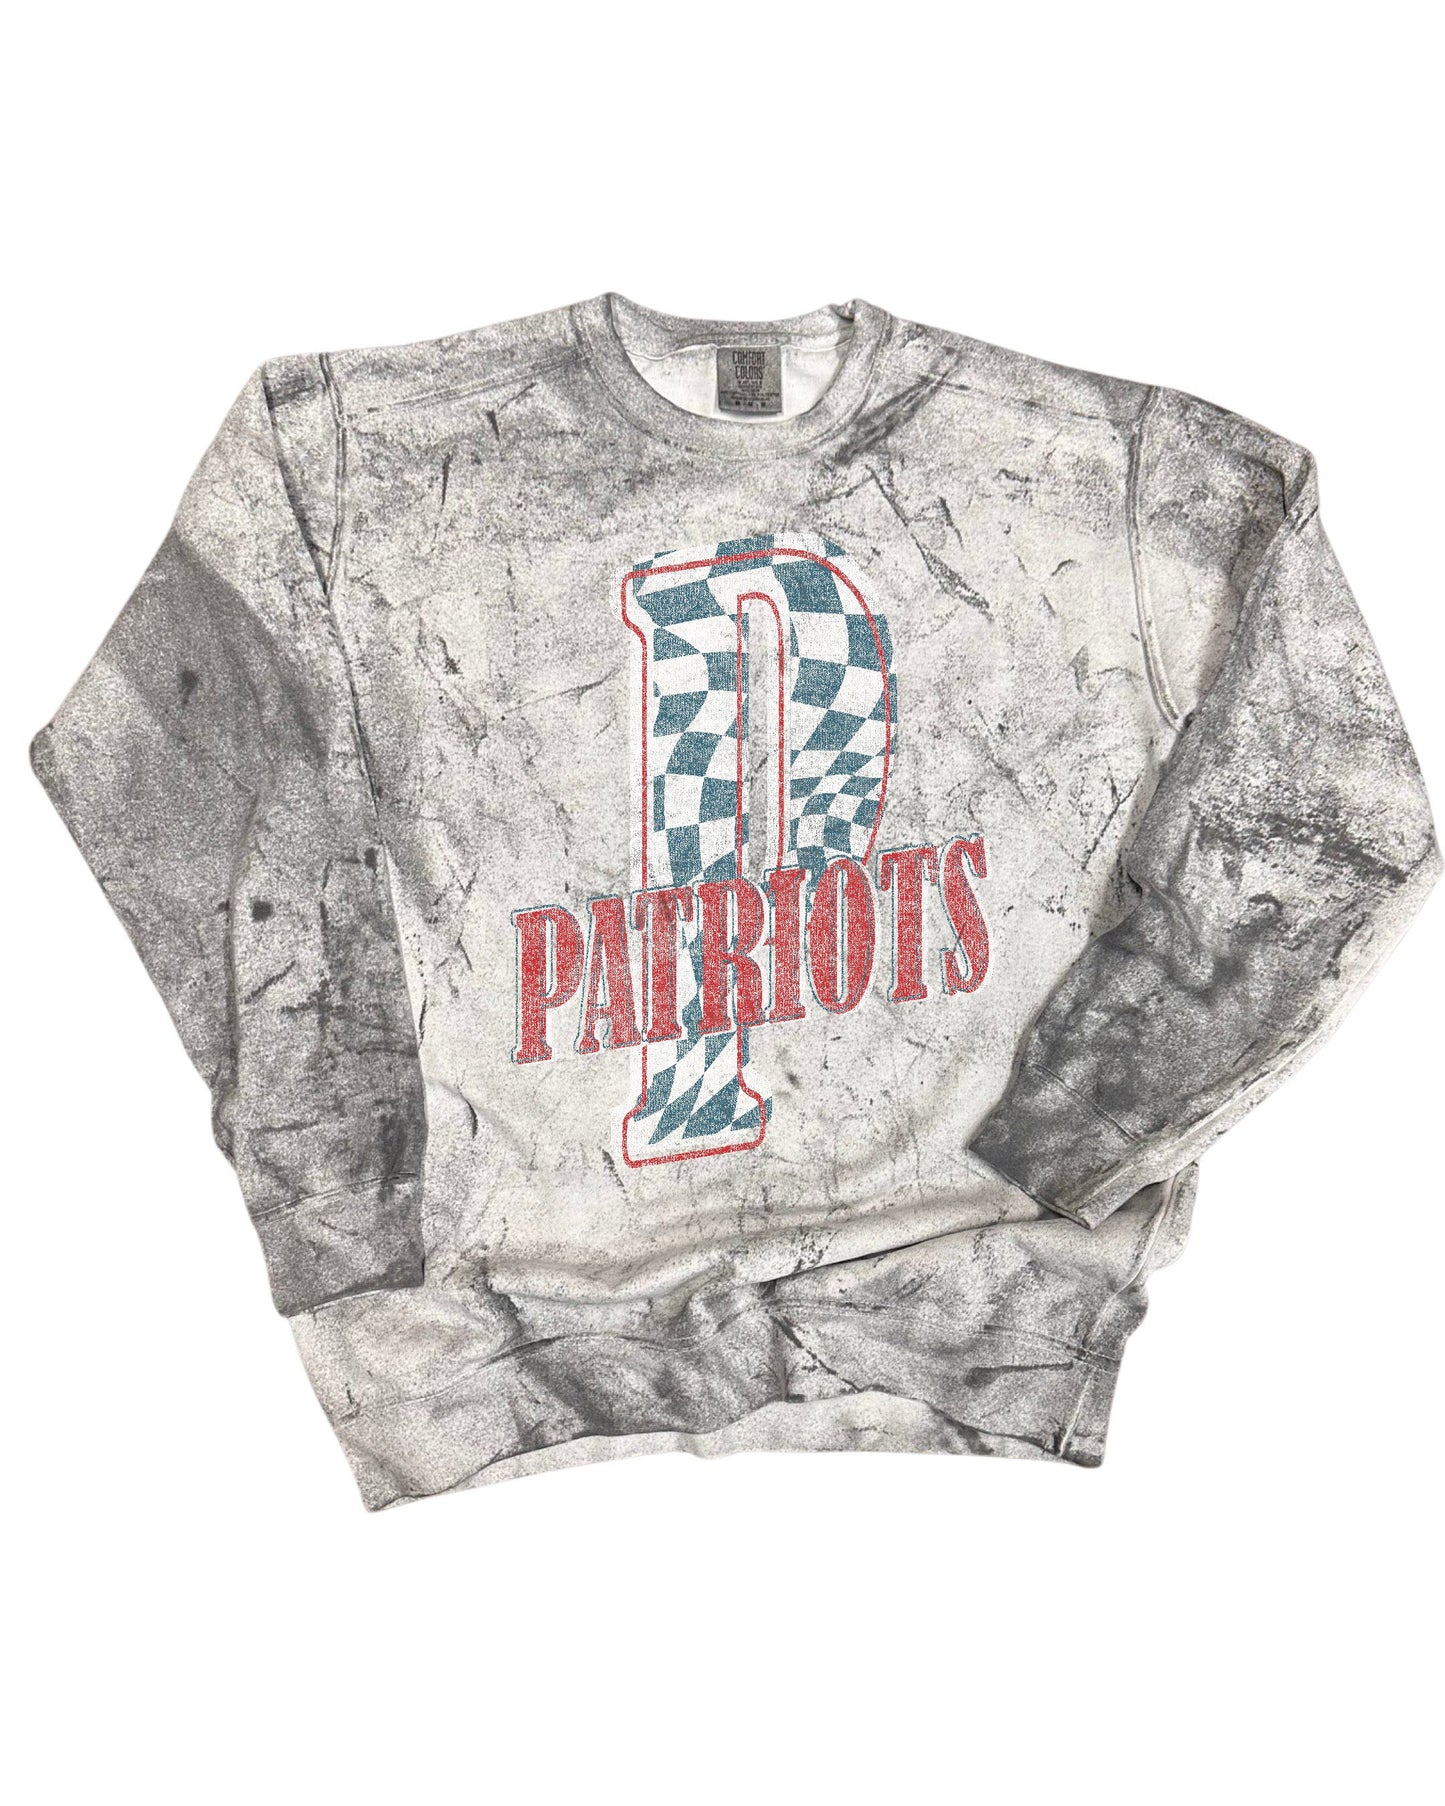 Prairiland Patriots Vintage Washed Spirit Sweatshirt